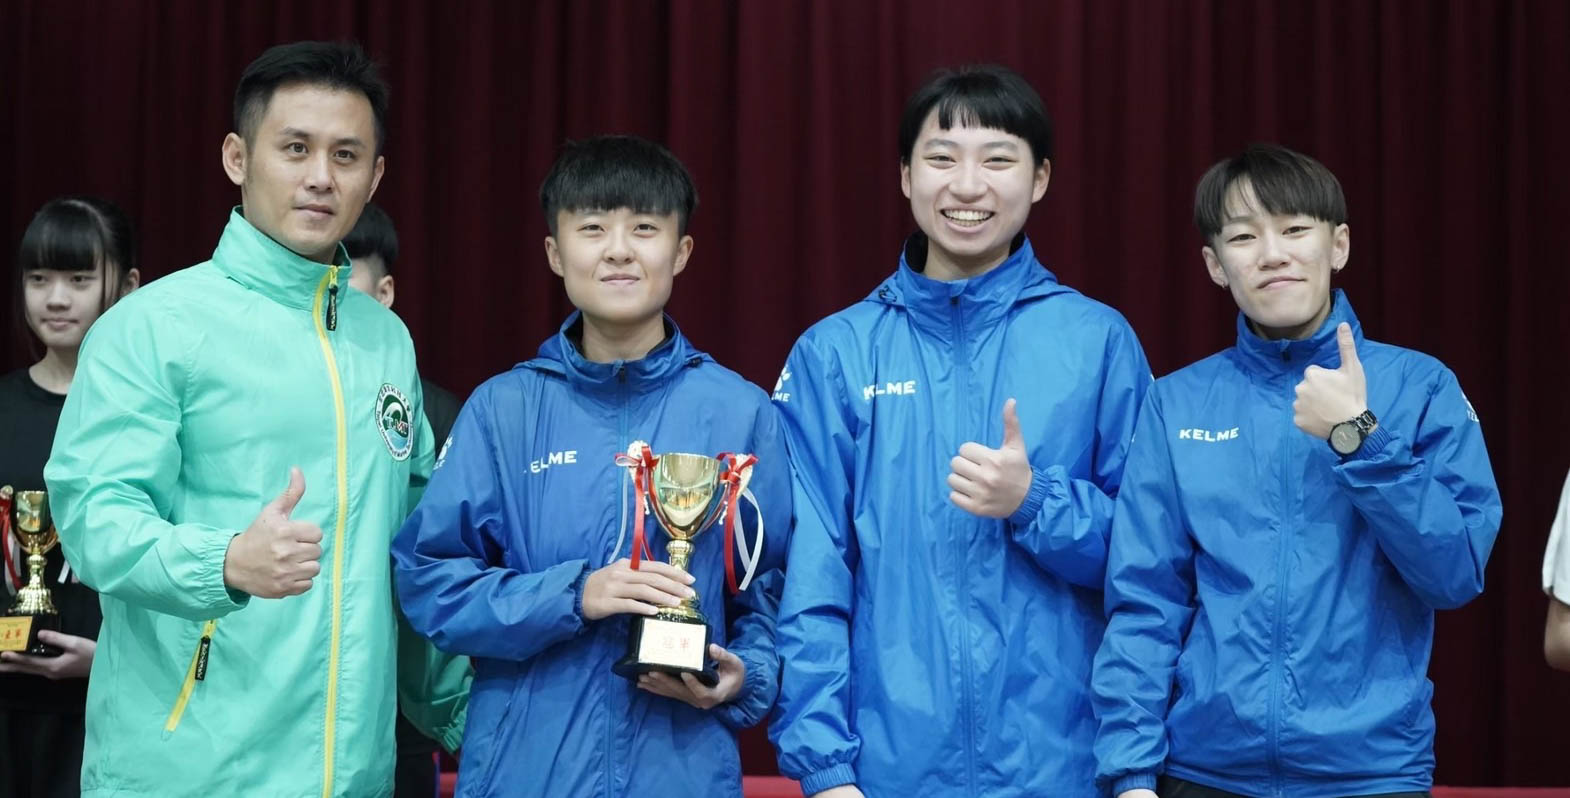 曹詠淇(右二)和學姊們拿下109學年度中華民國大專校院藤球錦標賽冠軍。圖/曹詠淇提供